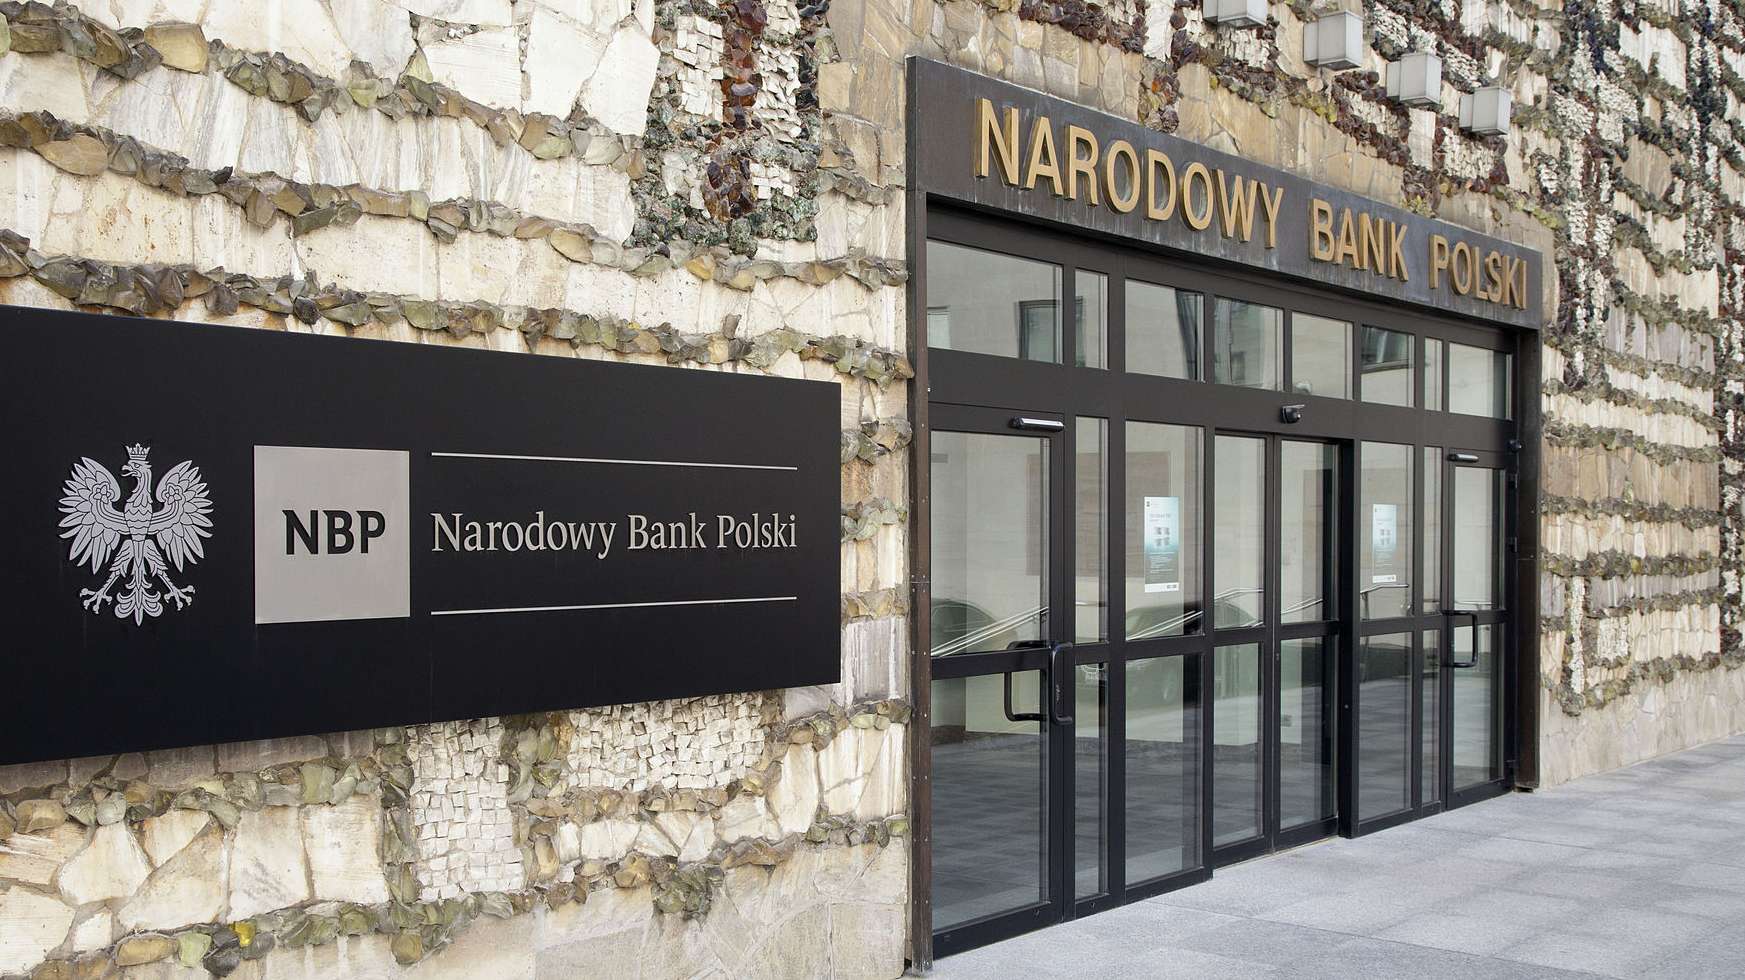 ORGANIZACJA Konstytucja Rzeczypospolitej Polskiej z 2 kwietnia 1997 oraz ustawa o Narodowym Banku Polskim zapewniają NBP